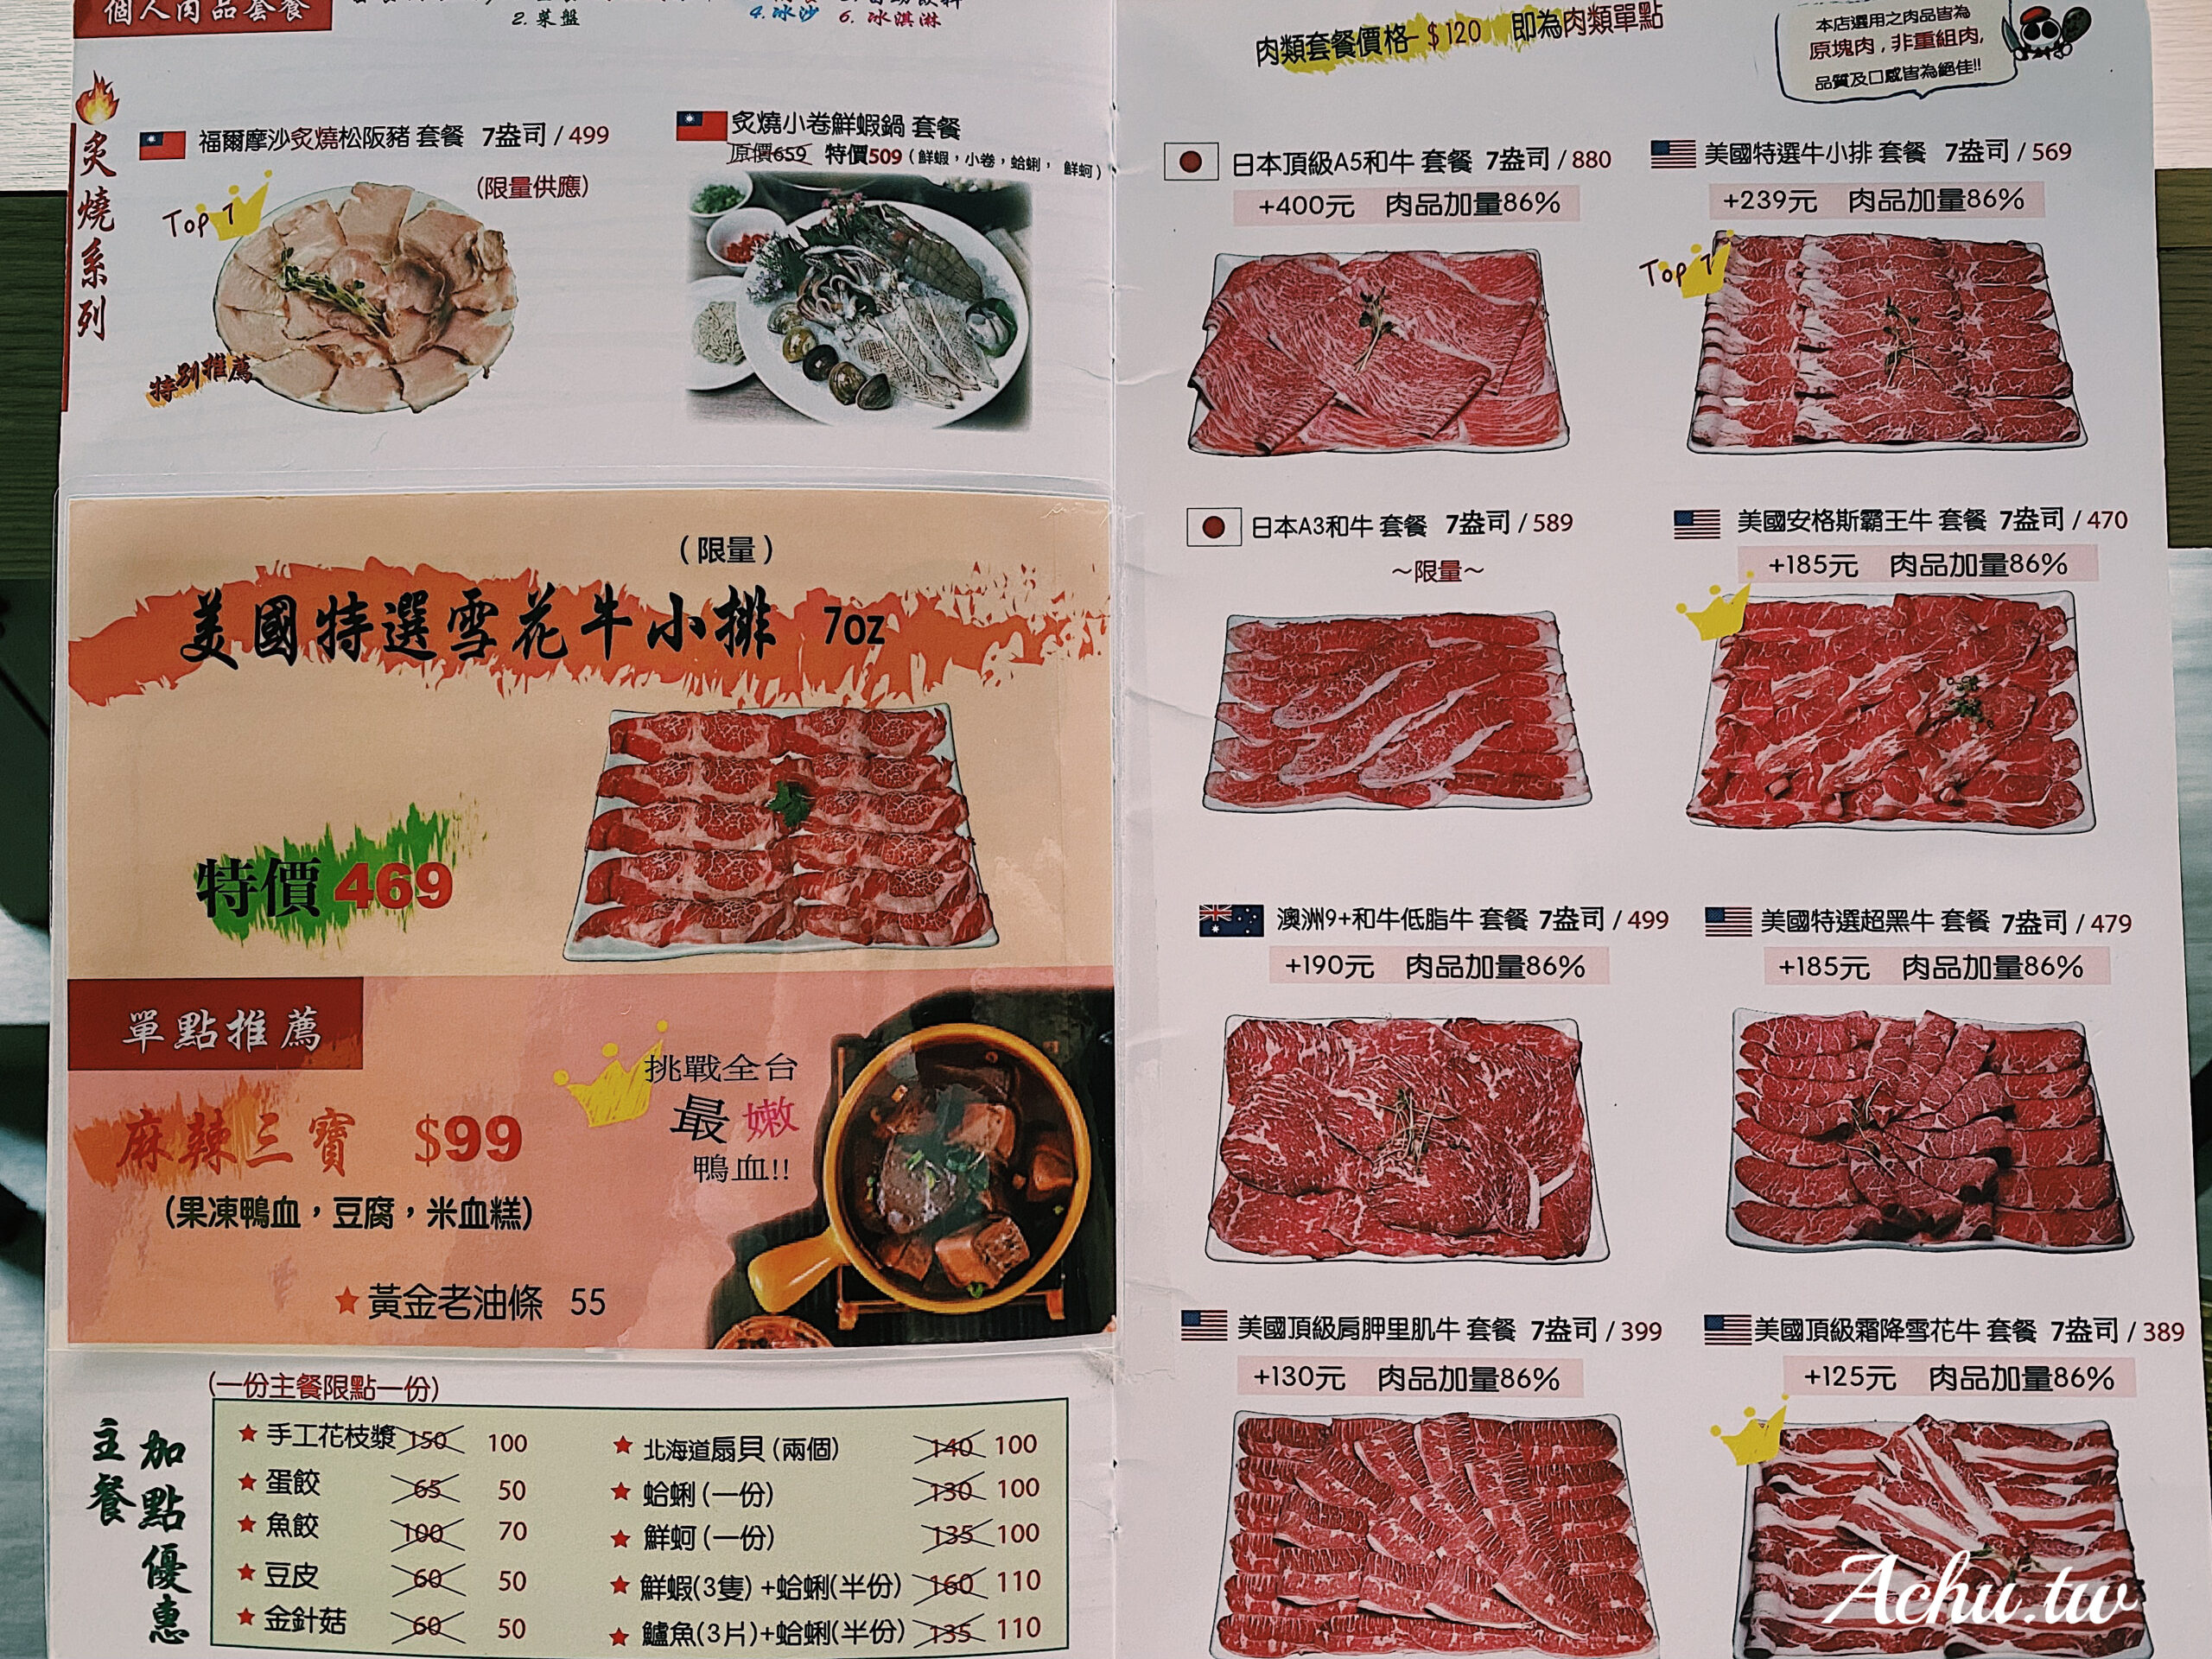 【府中美食】肉老大頂級肉品涮涮鍋板橋府中店 (菜單)